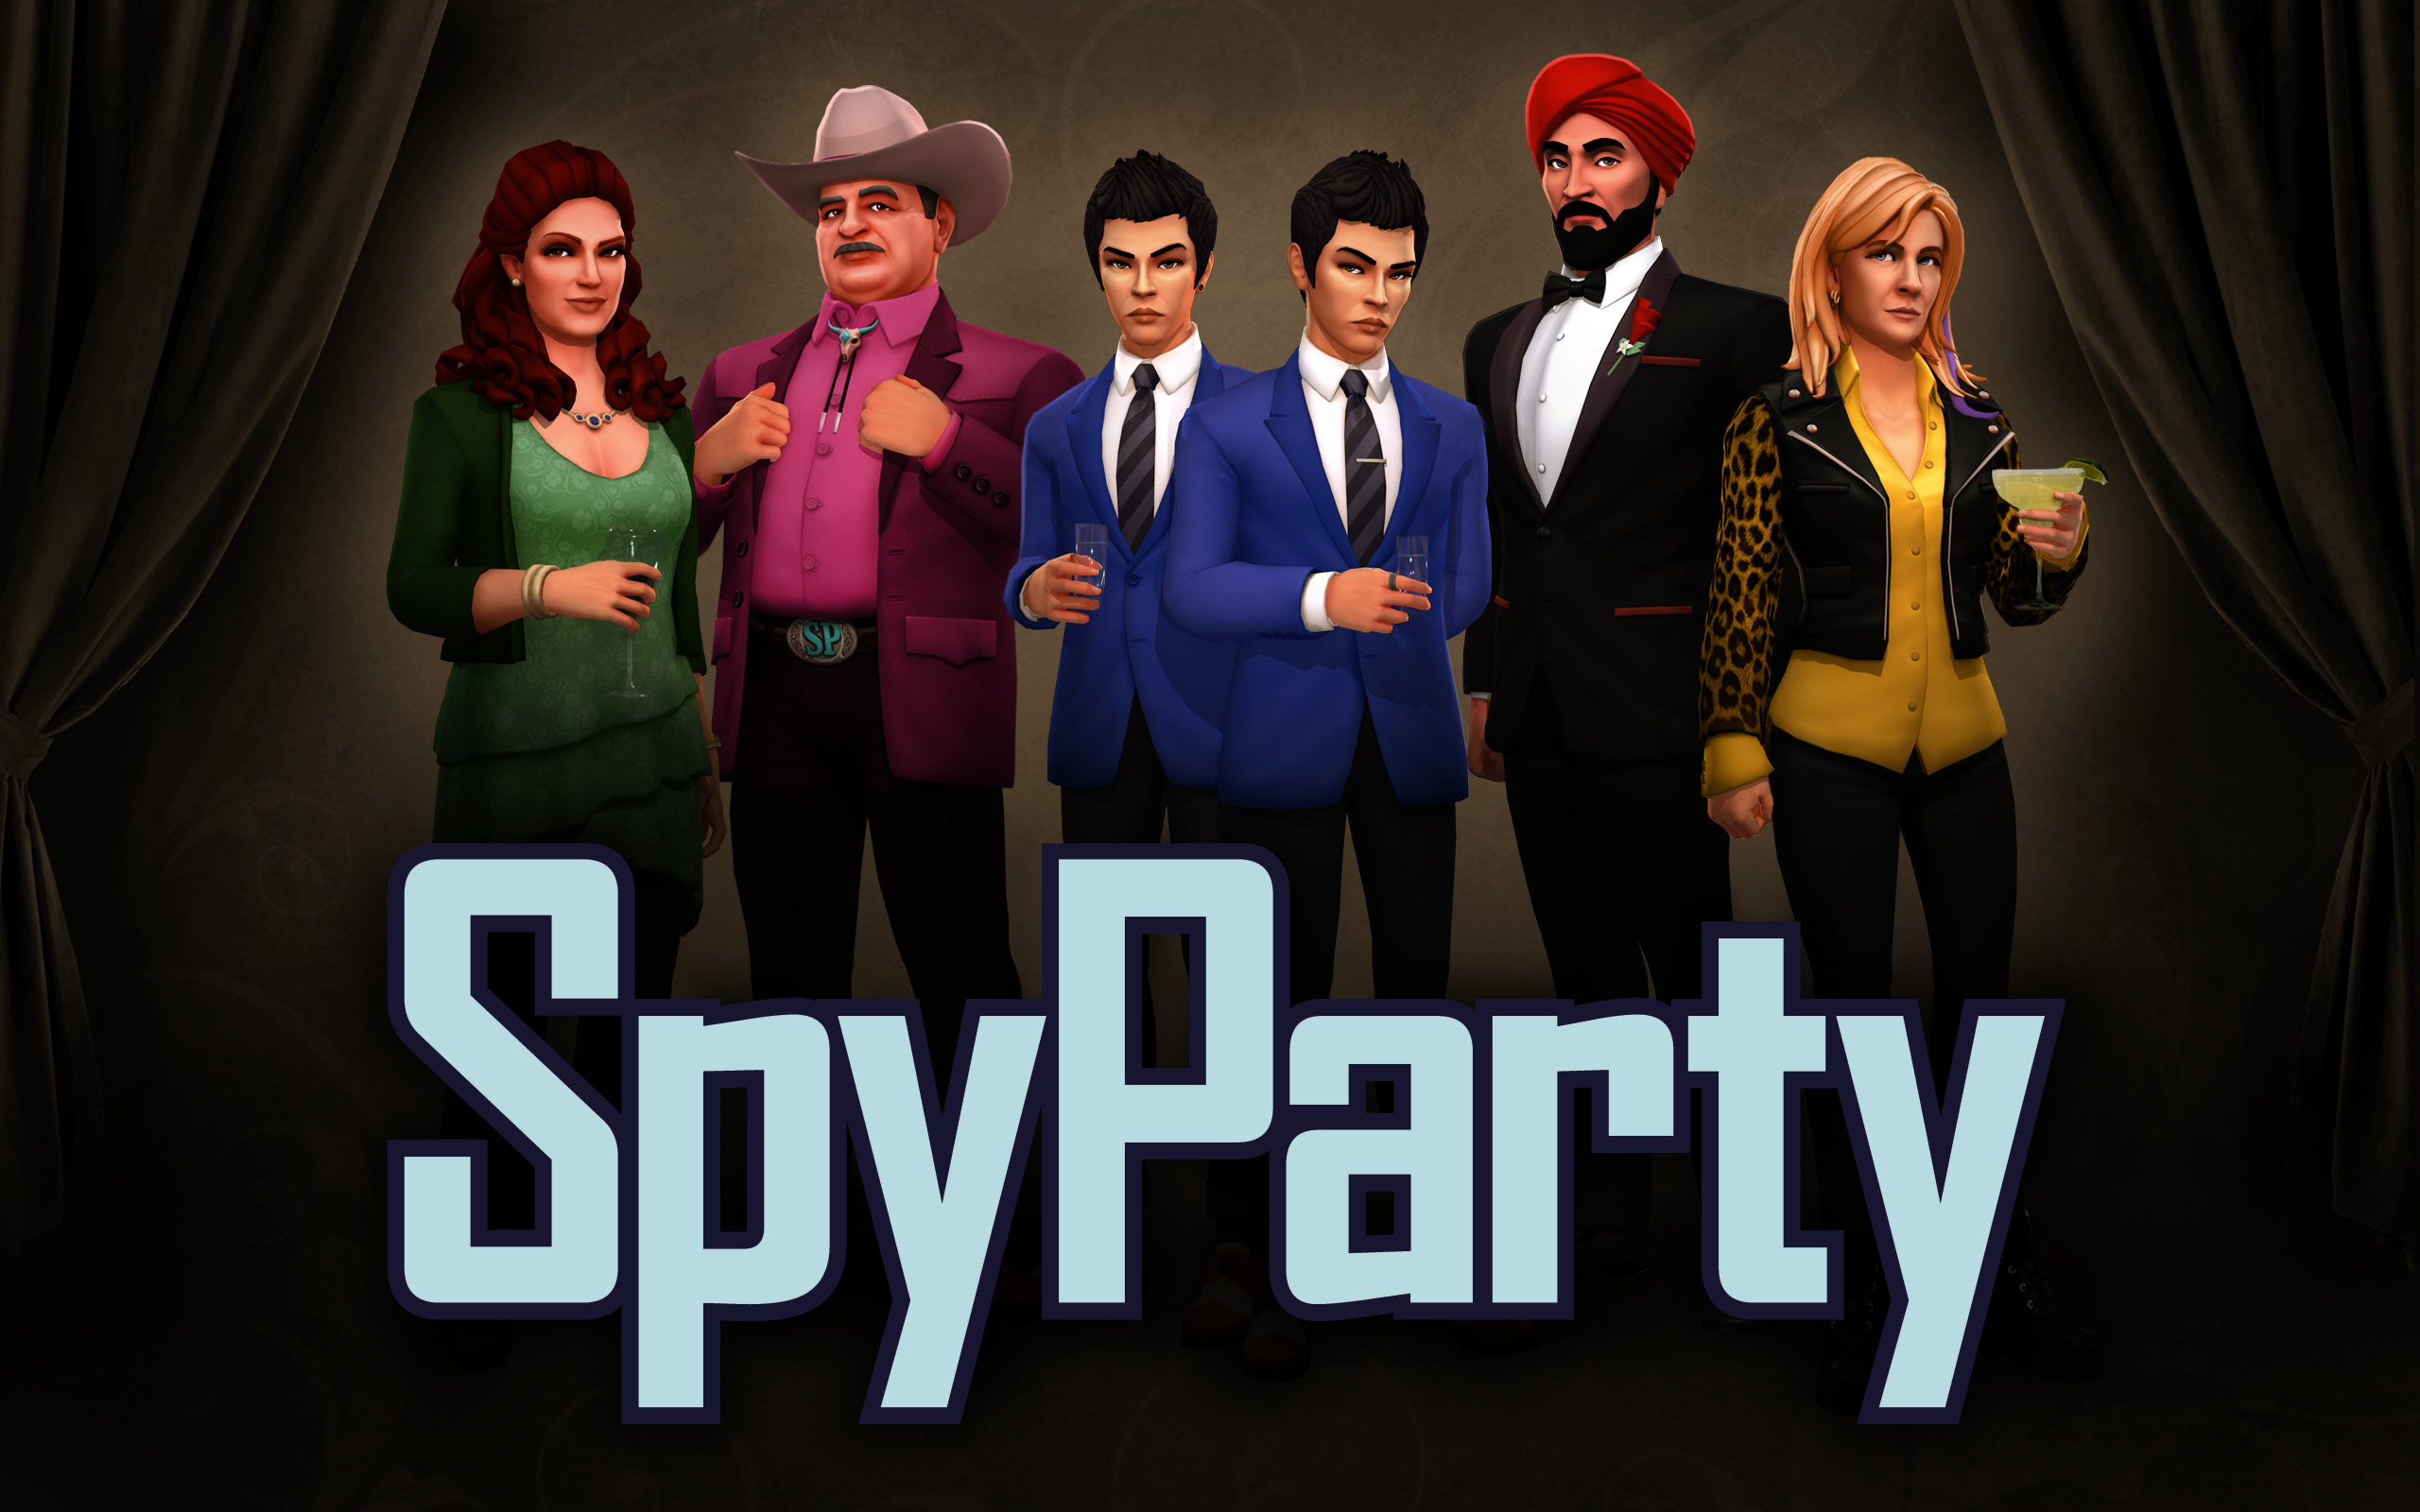 Spy party стим фото 23